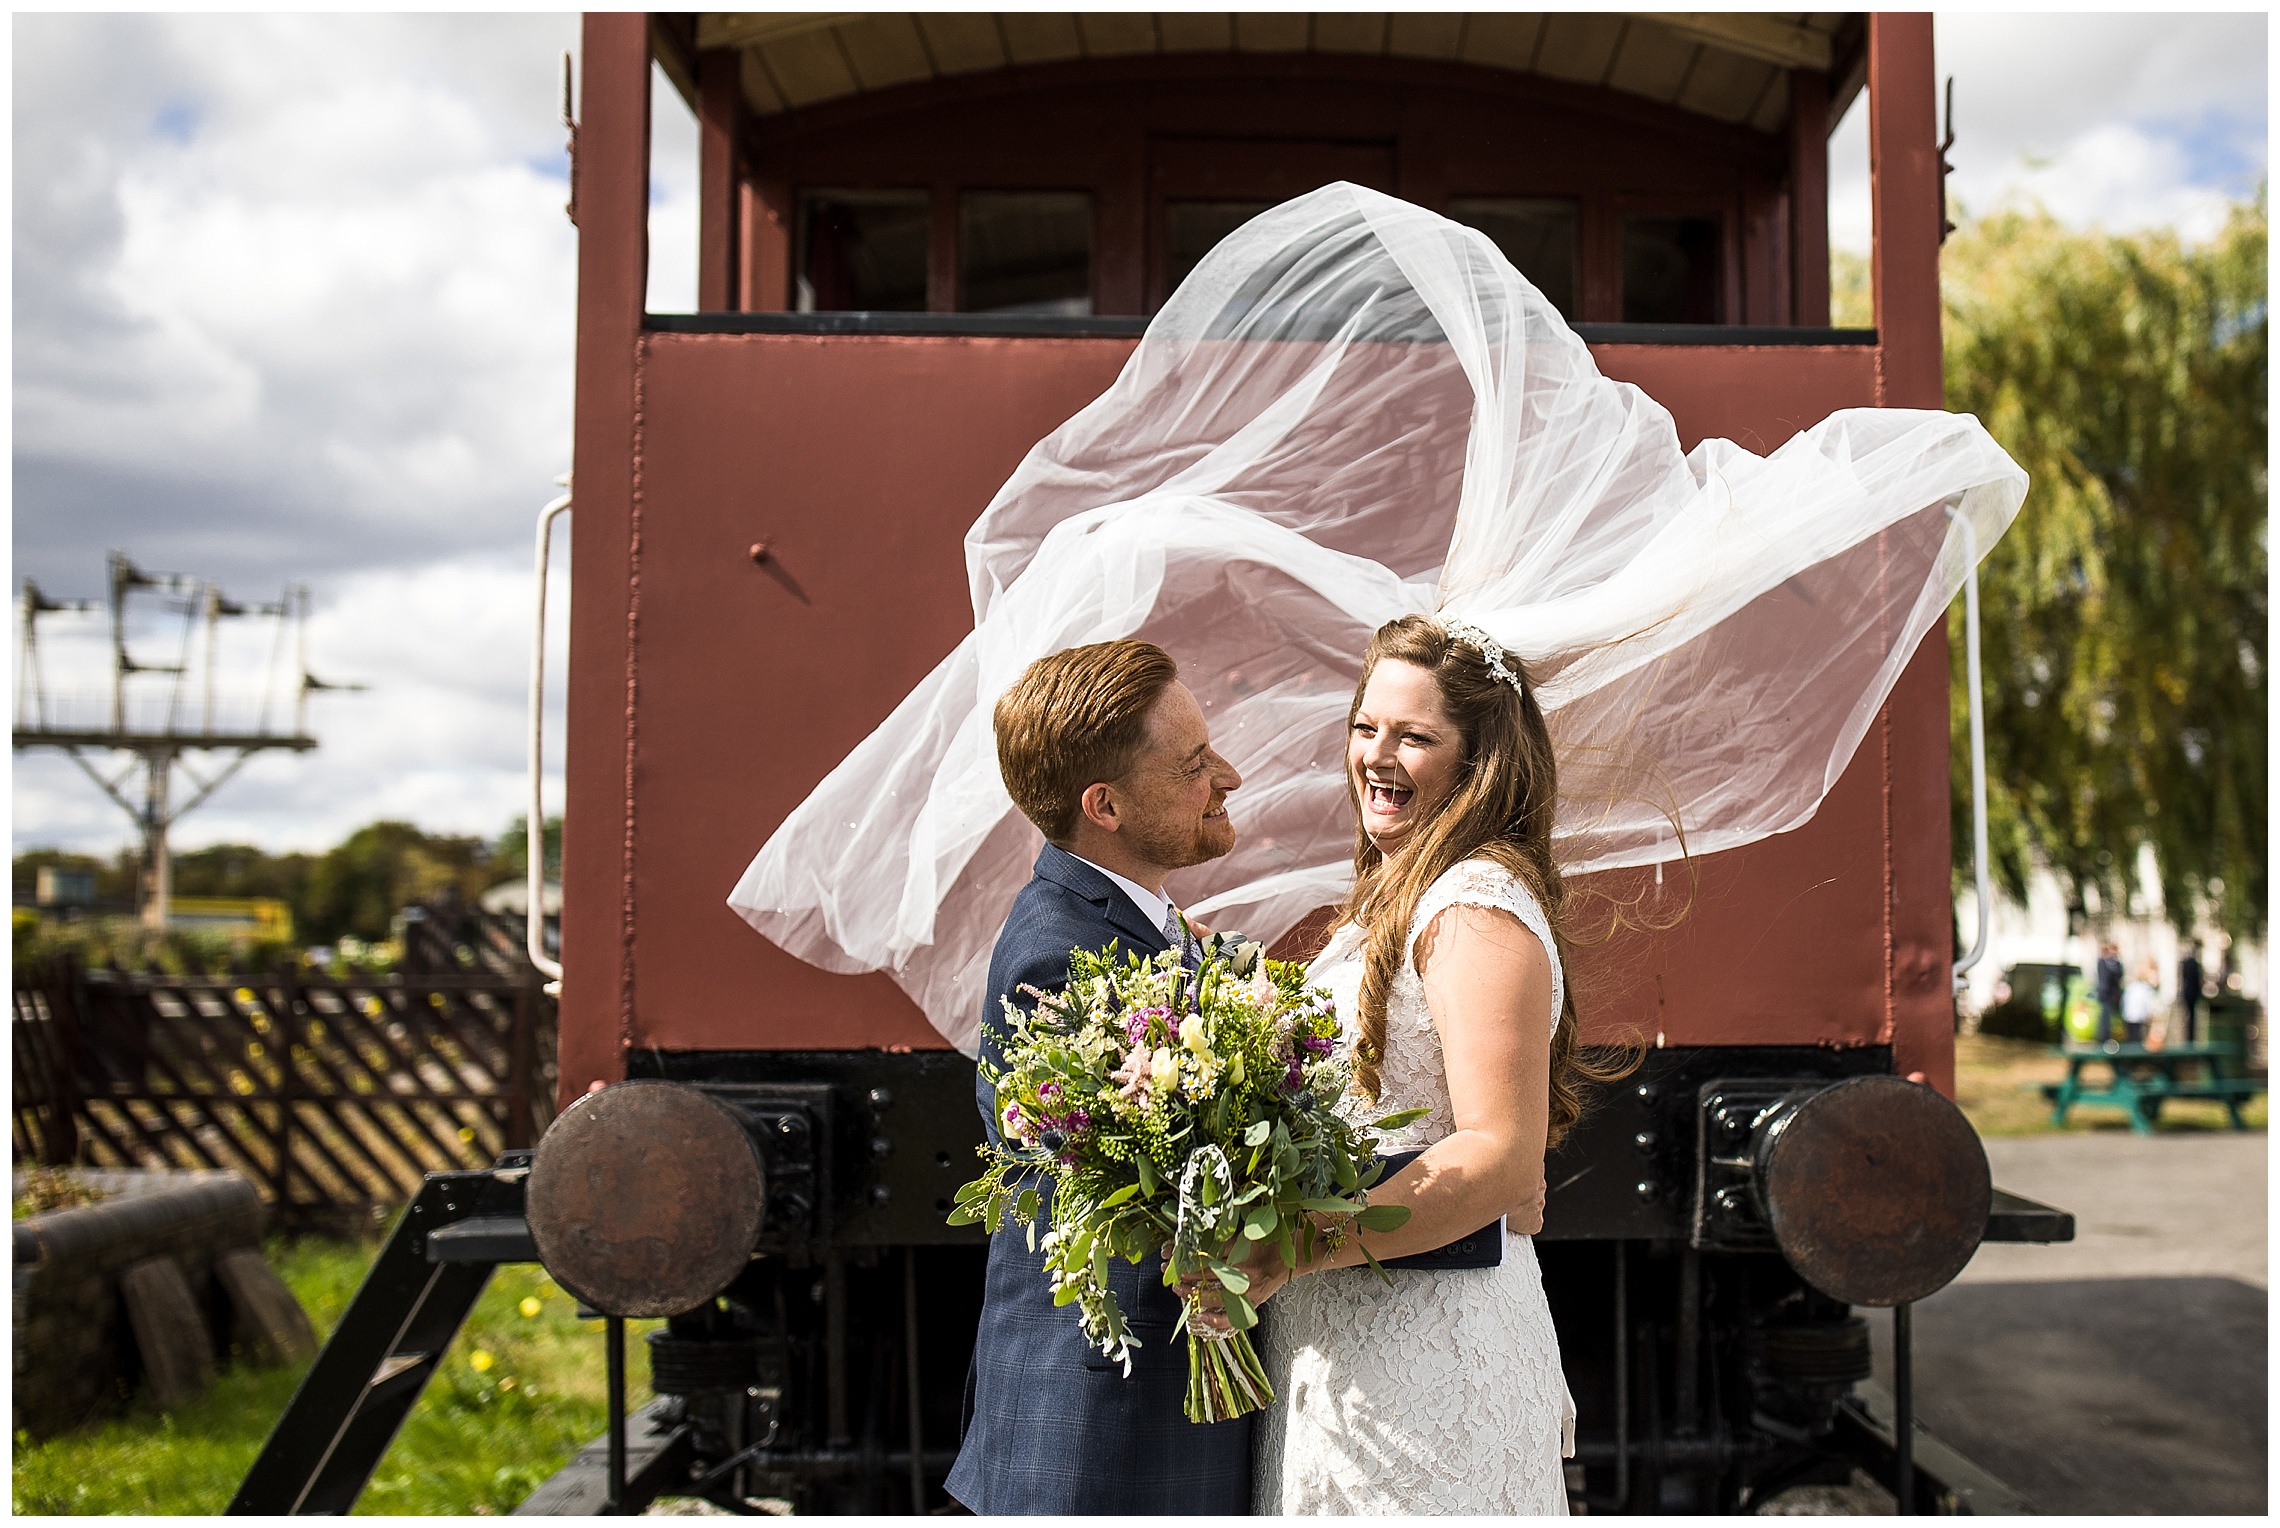 brides veil blows high in wind at bucks railway centre